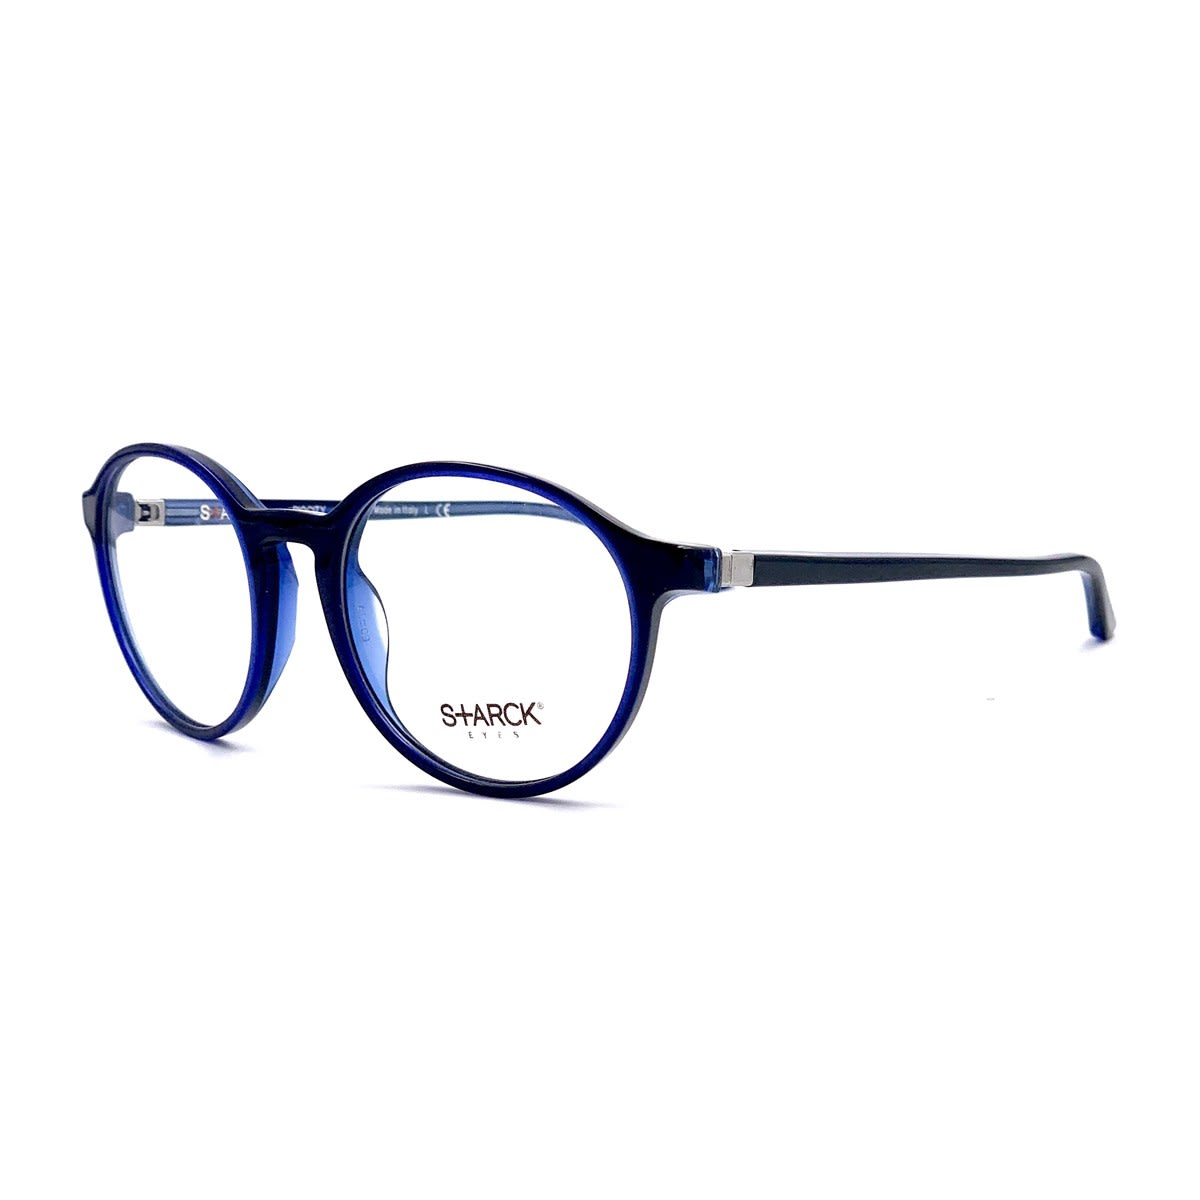 Philippe Starck 3035 Vista Glasses In Blu